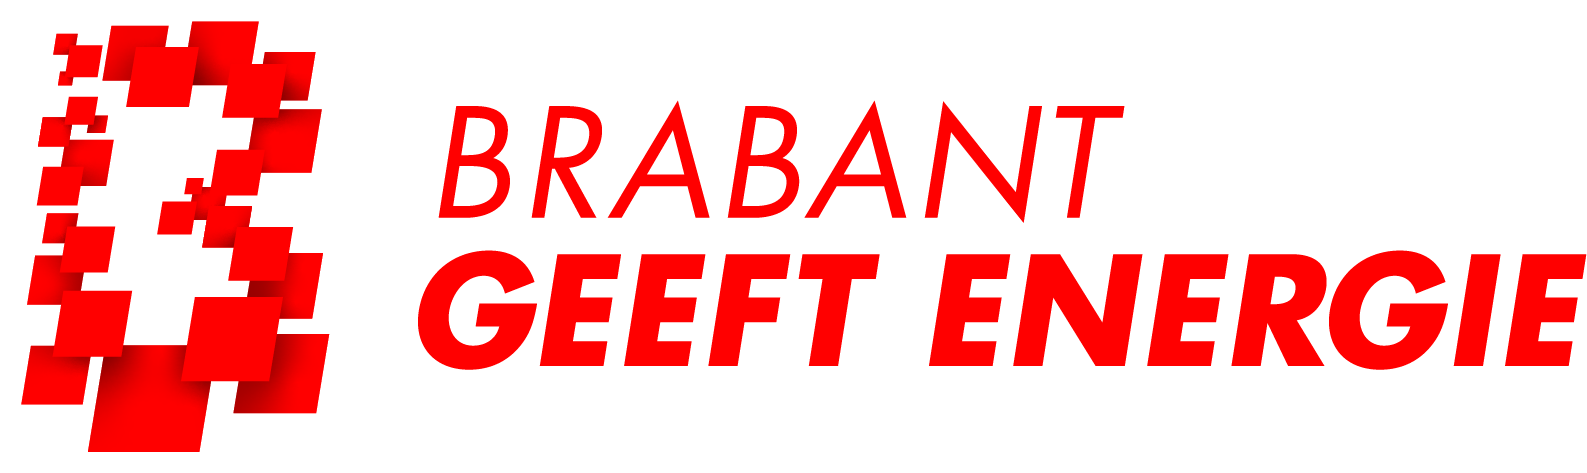 logo Brabant geeft energie